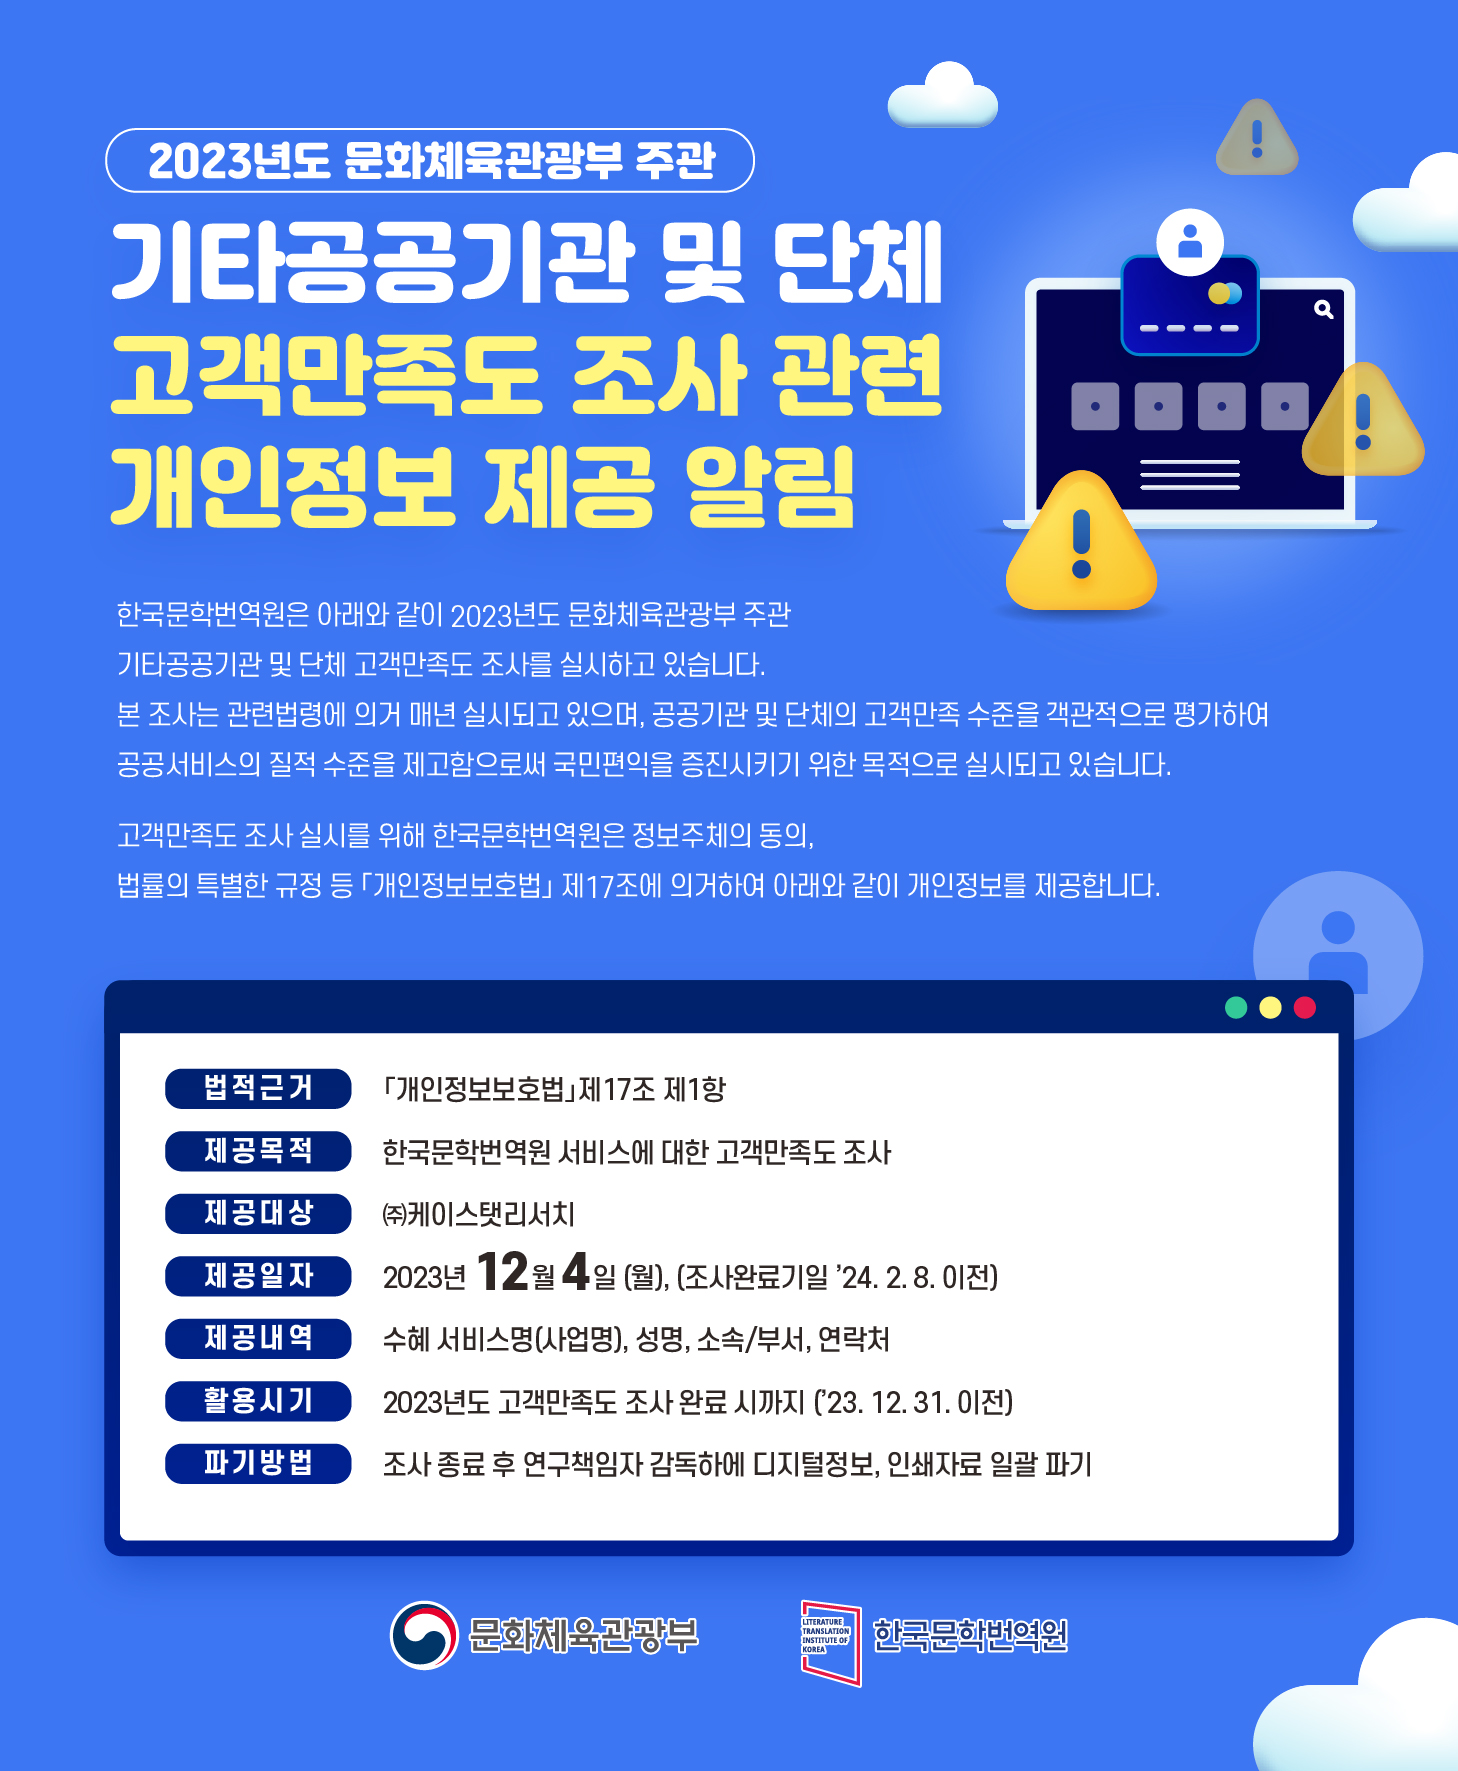 한국문학번역원 서비스에 대한 고객만족도 조사 관련 개인정보 제공 알림